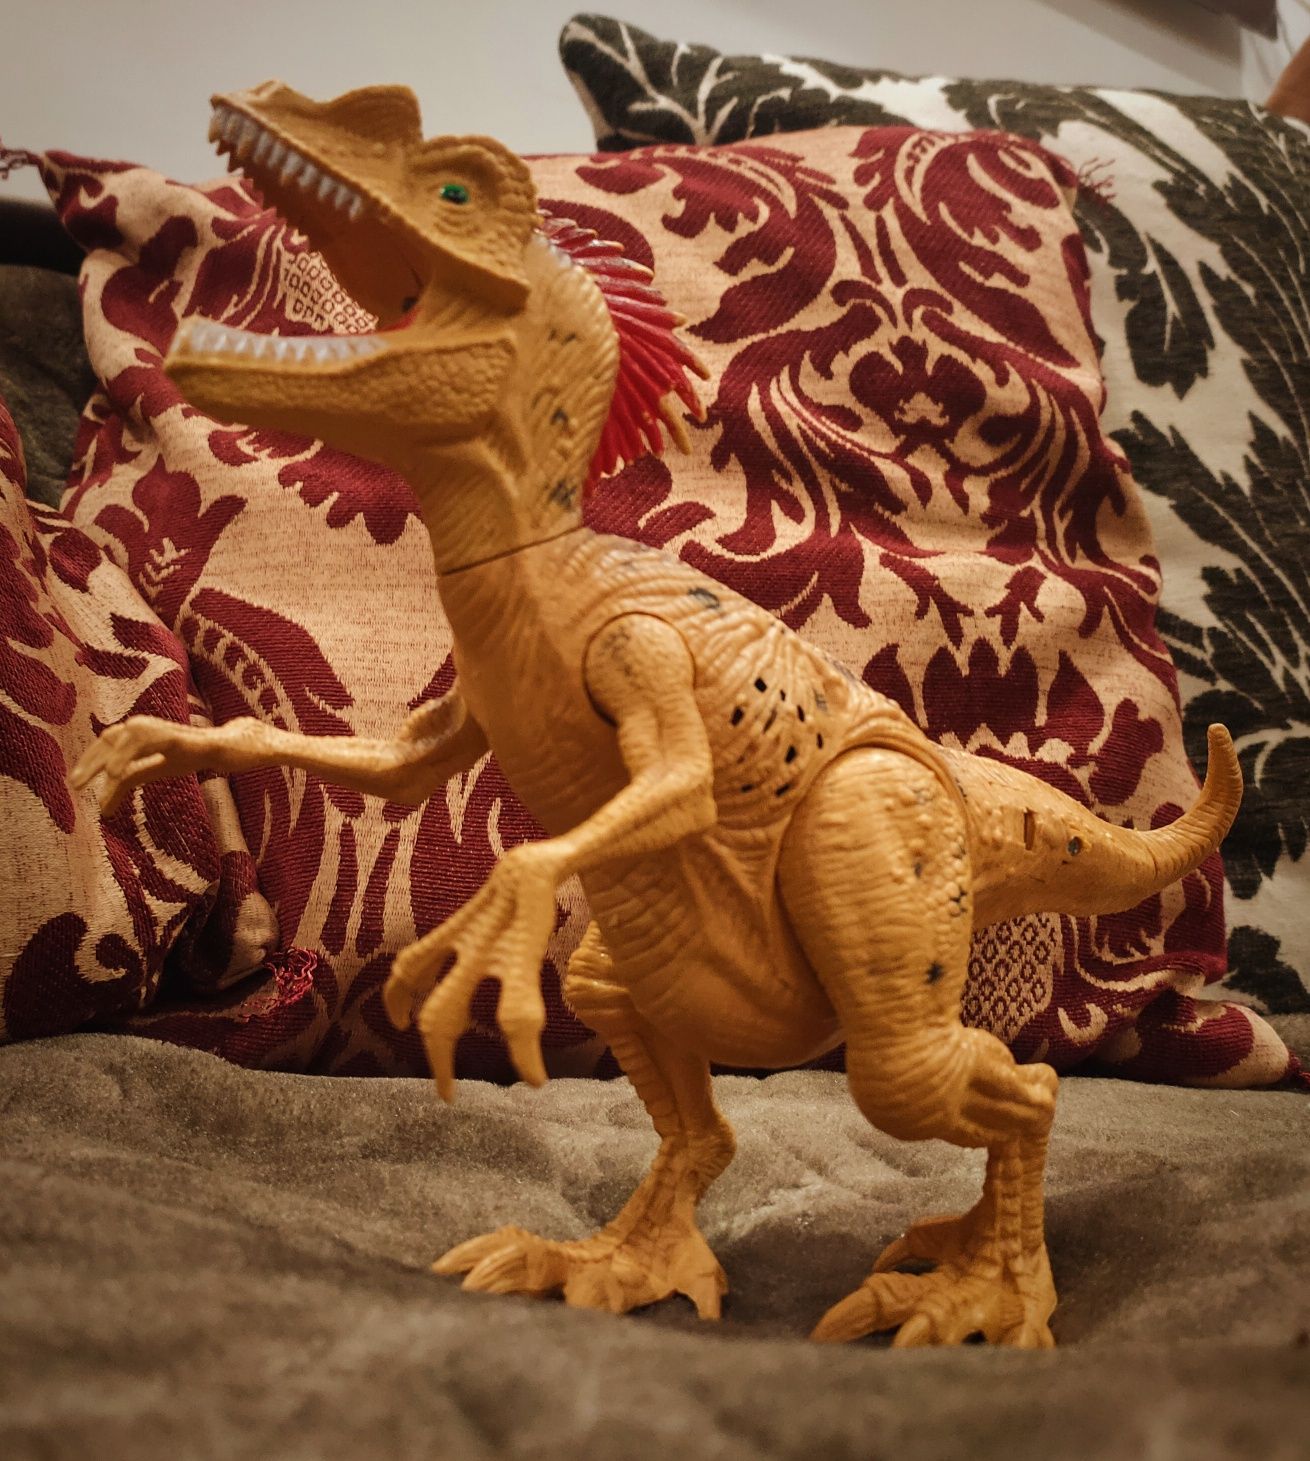 Dinozaur, smok zabawka plastikowy duży